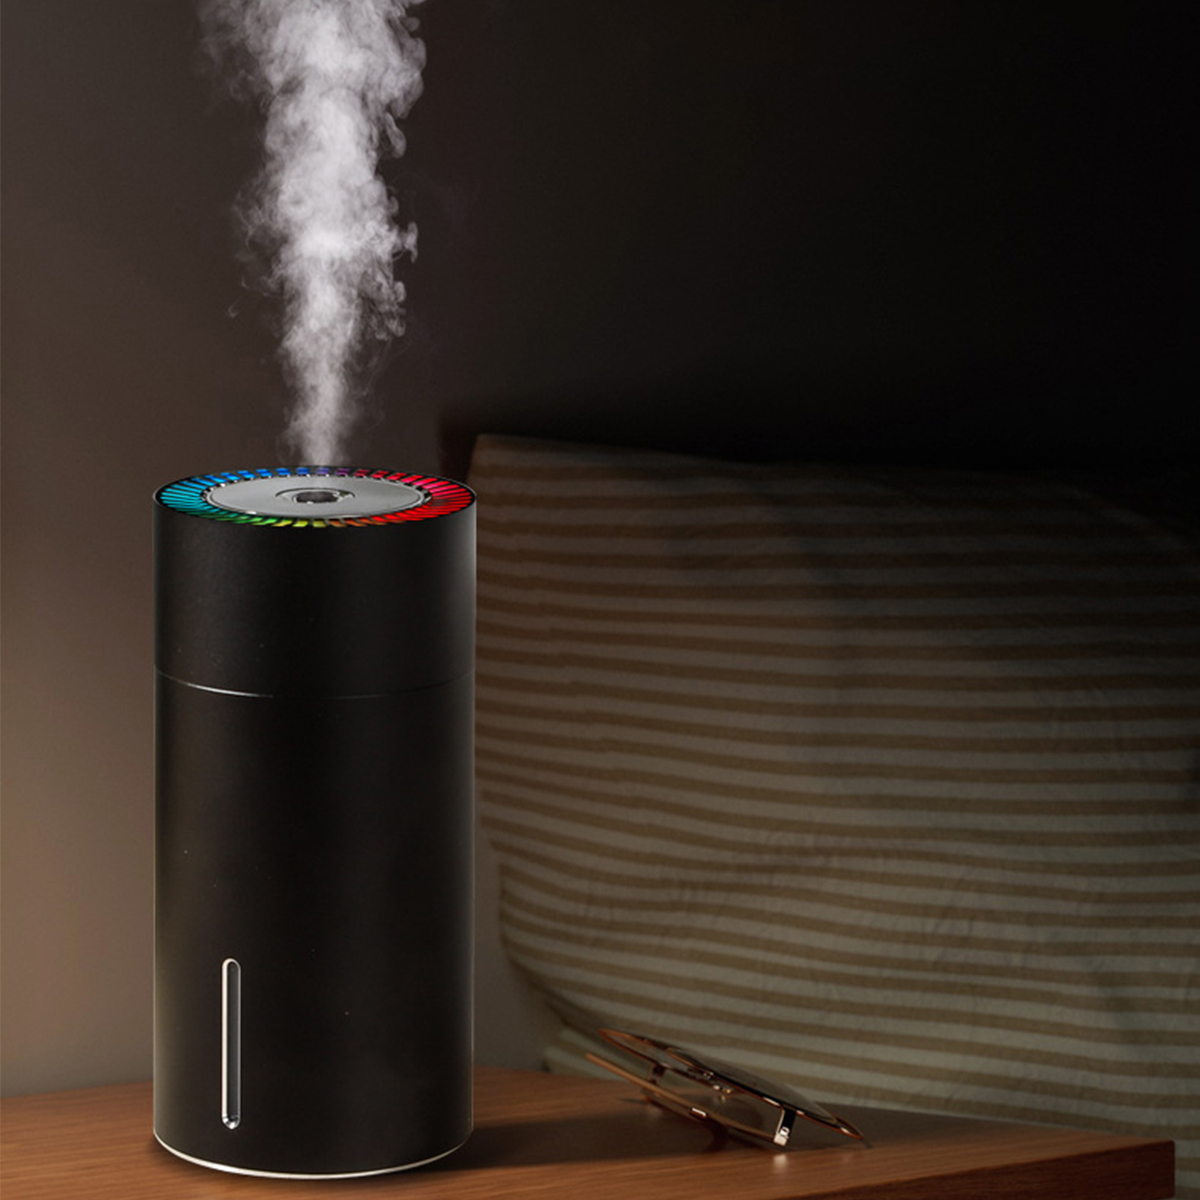 m²) Tragbarer USB 7-Farben-Phantombecher-Luftbefeuchter SHAOKE Aromatherapie, mit Luftbefeuchter (Raumgröße: Grau 10